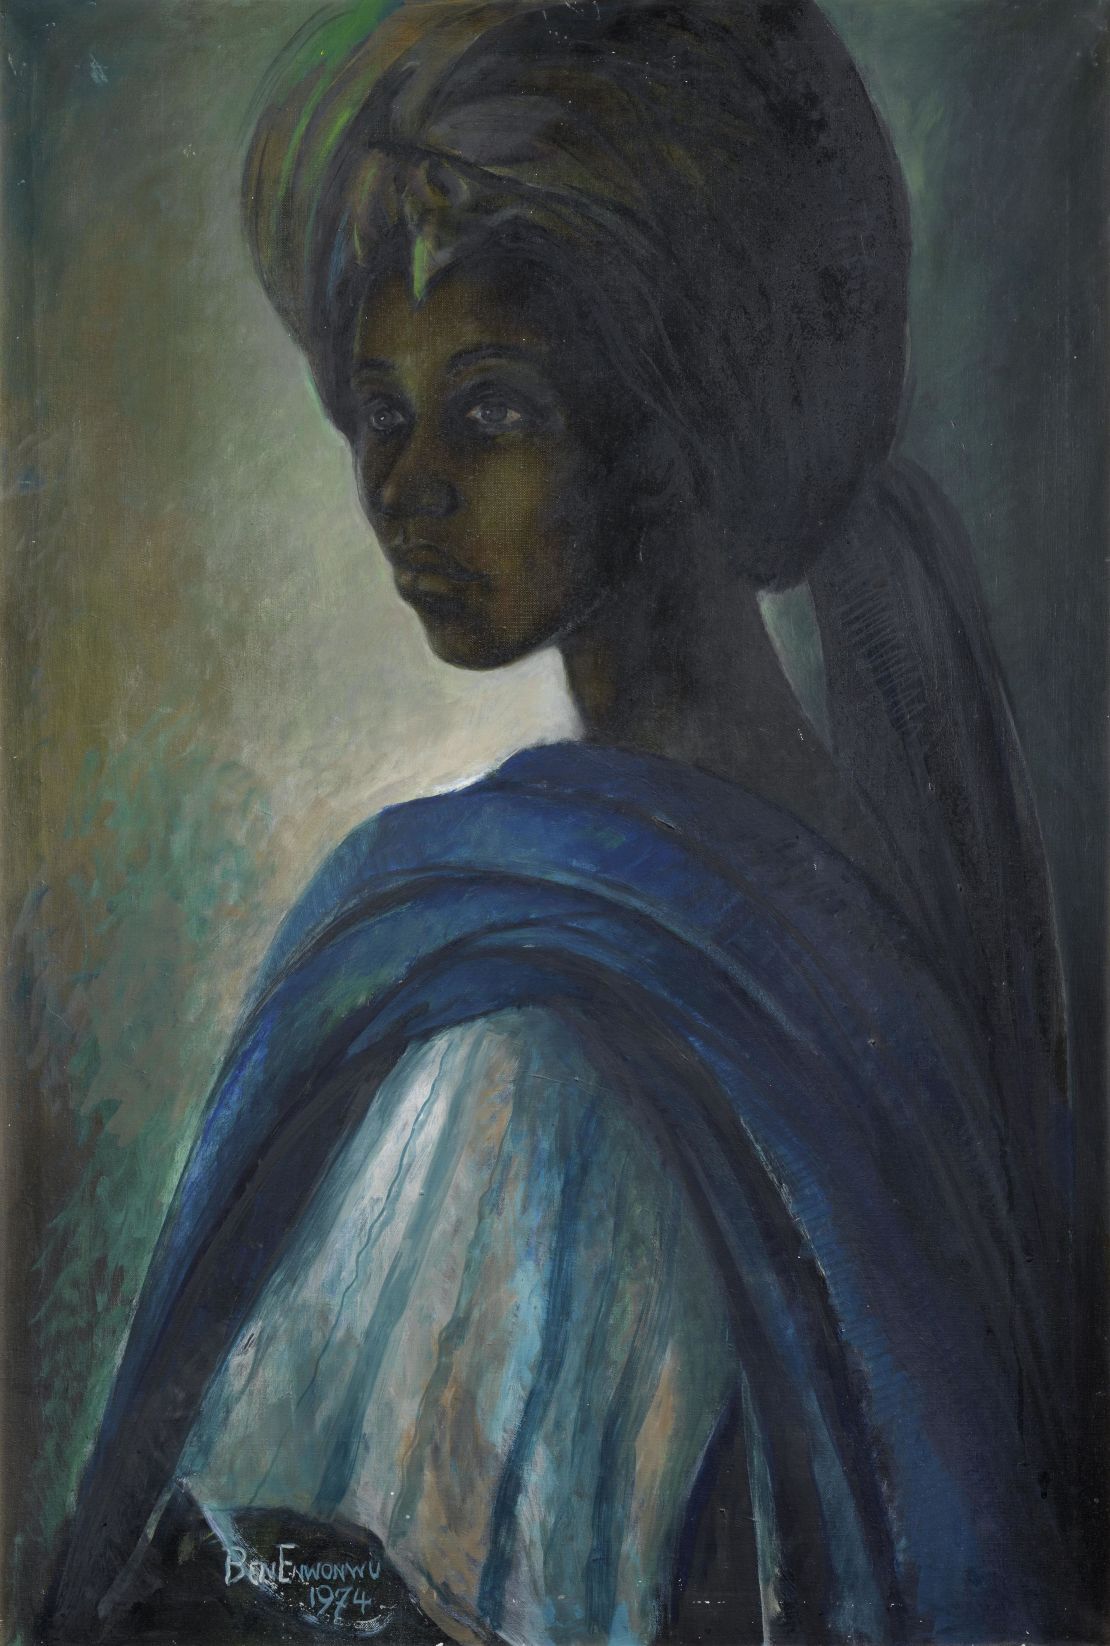 "Tutu" is one of three missing paintings by Nigerian artist Ben Enwonwu 